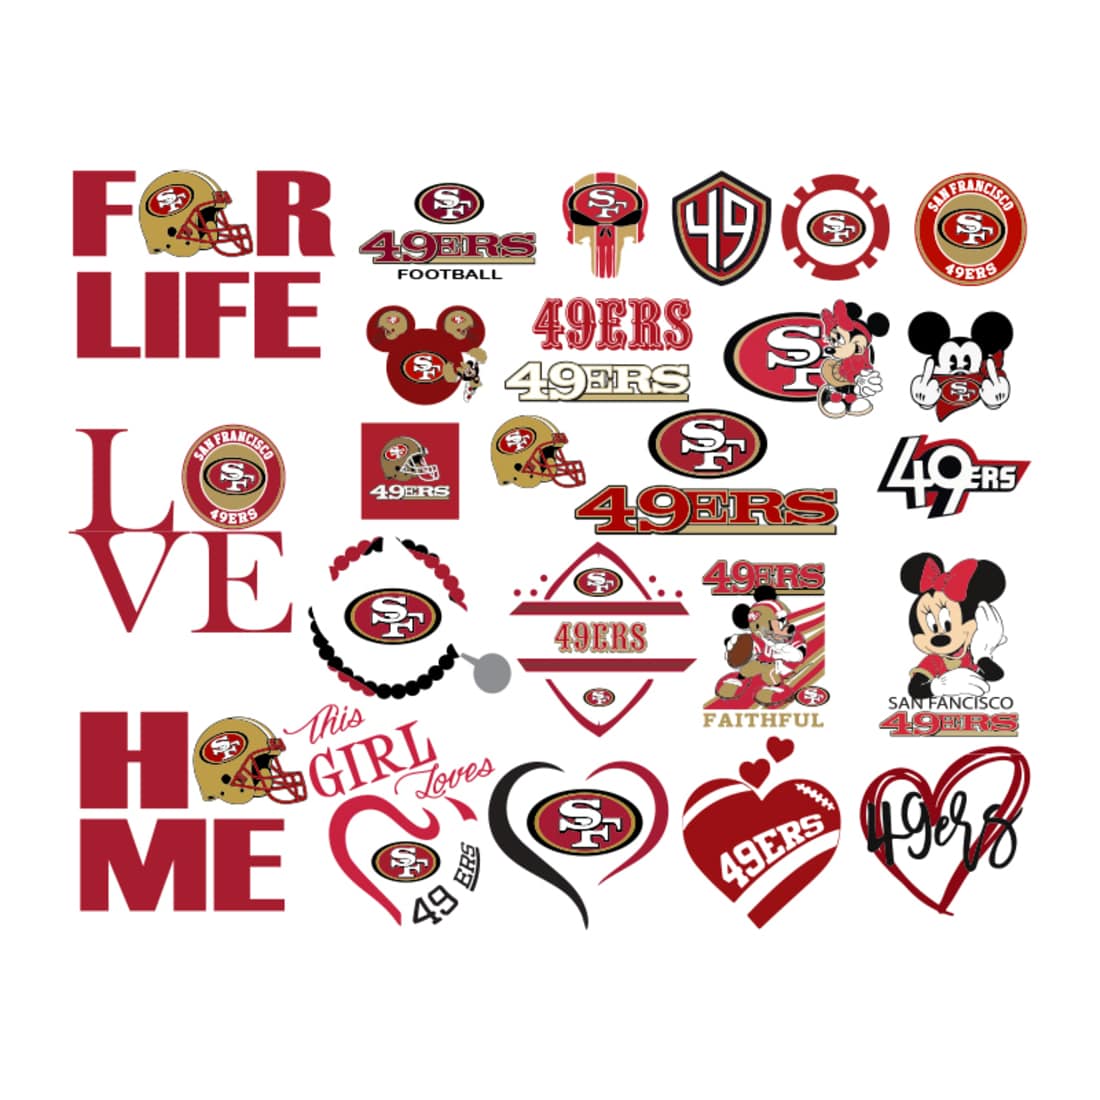 San Francisco 49ers bundle Svg, San Francisco 49ers Logo Svg, NFL football Svg, Sport logo Svg, Football logo Svg, Digital download preview image.